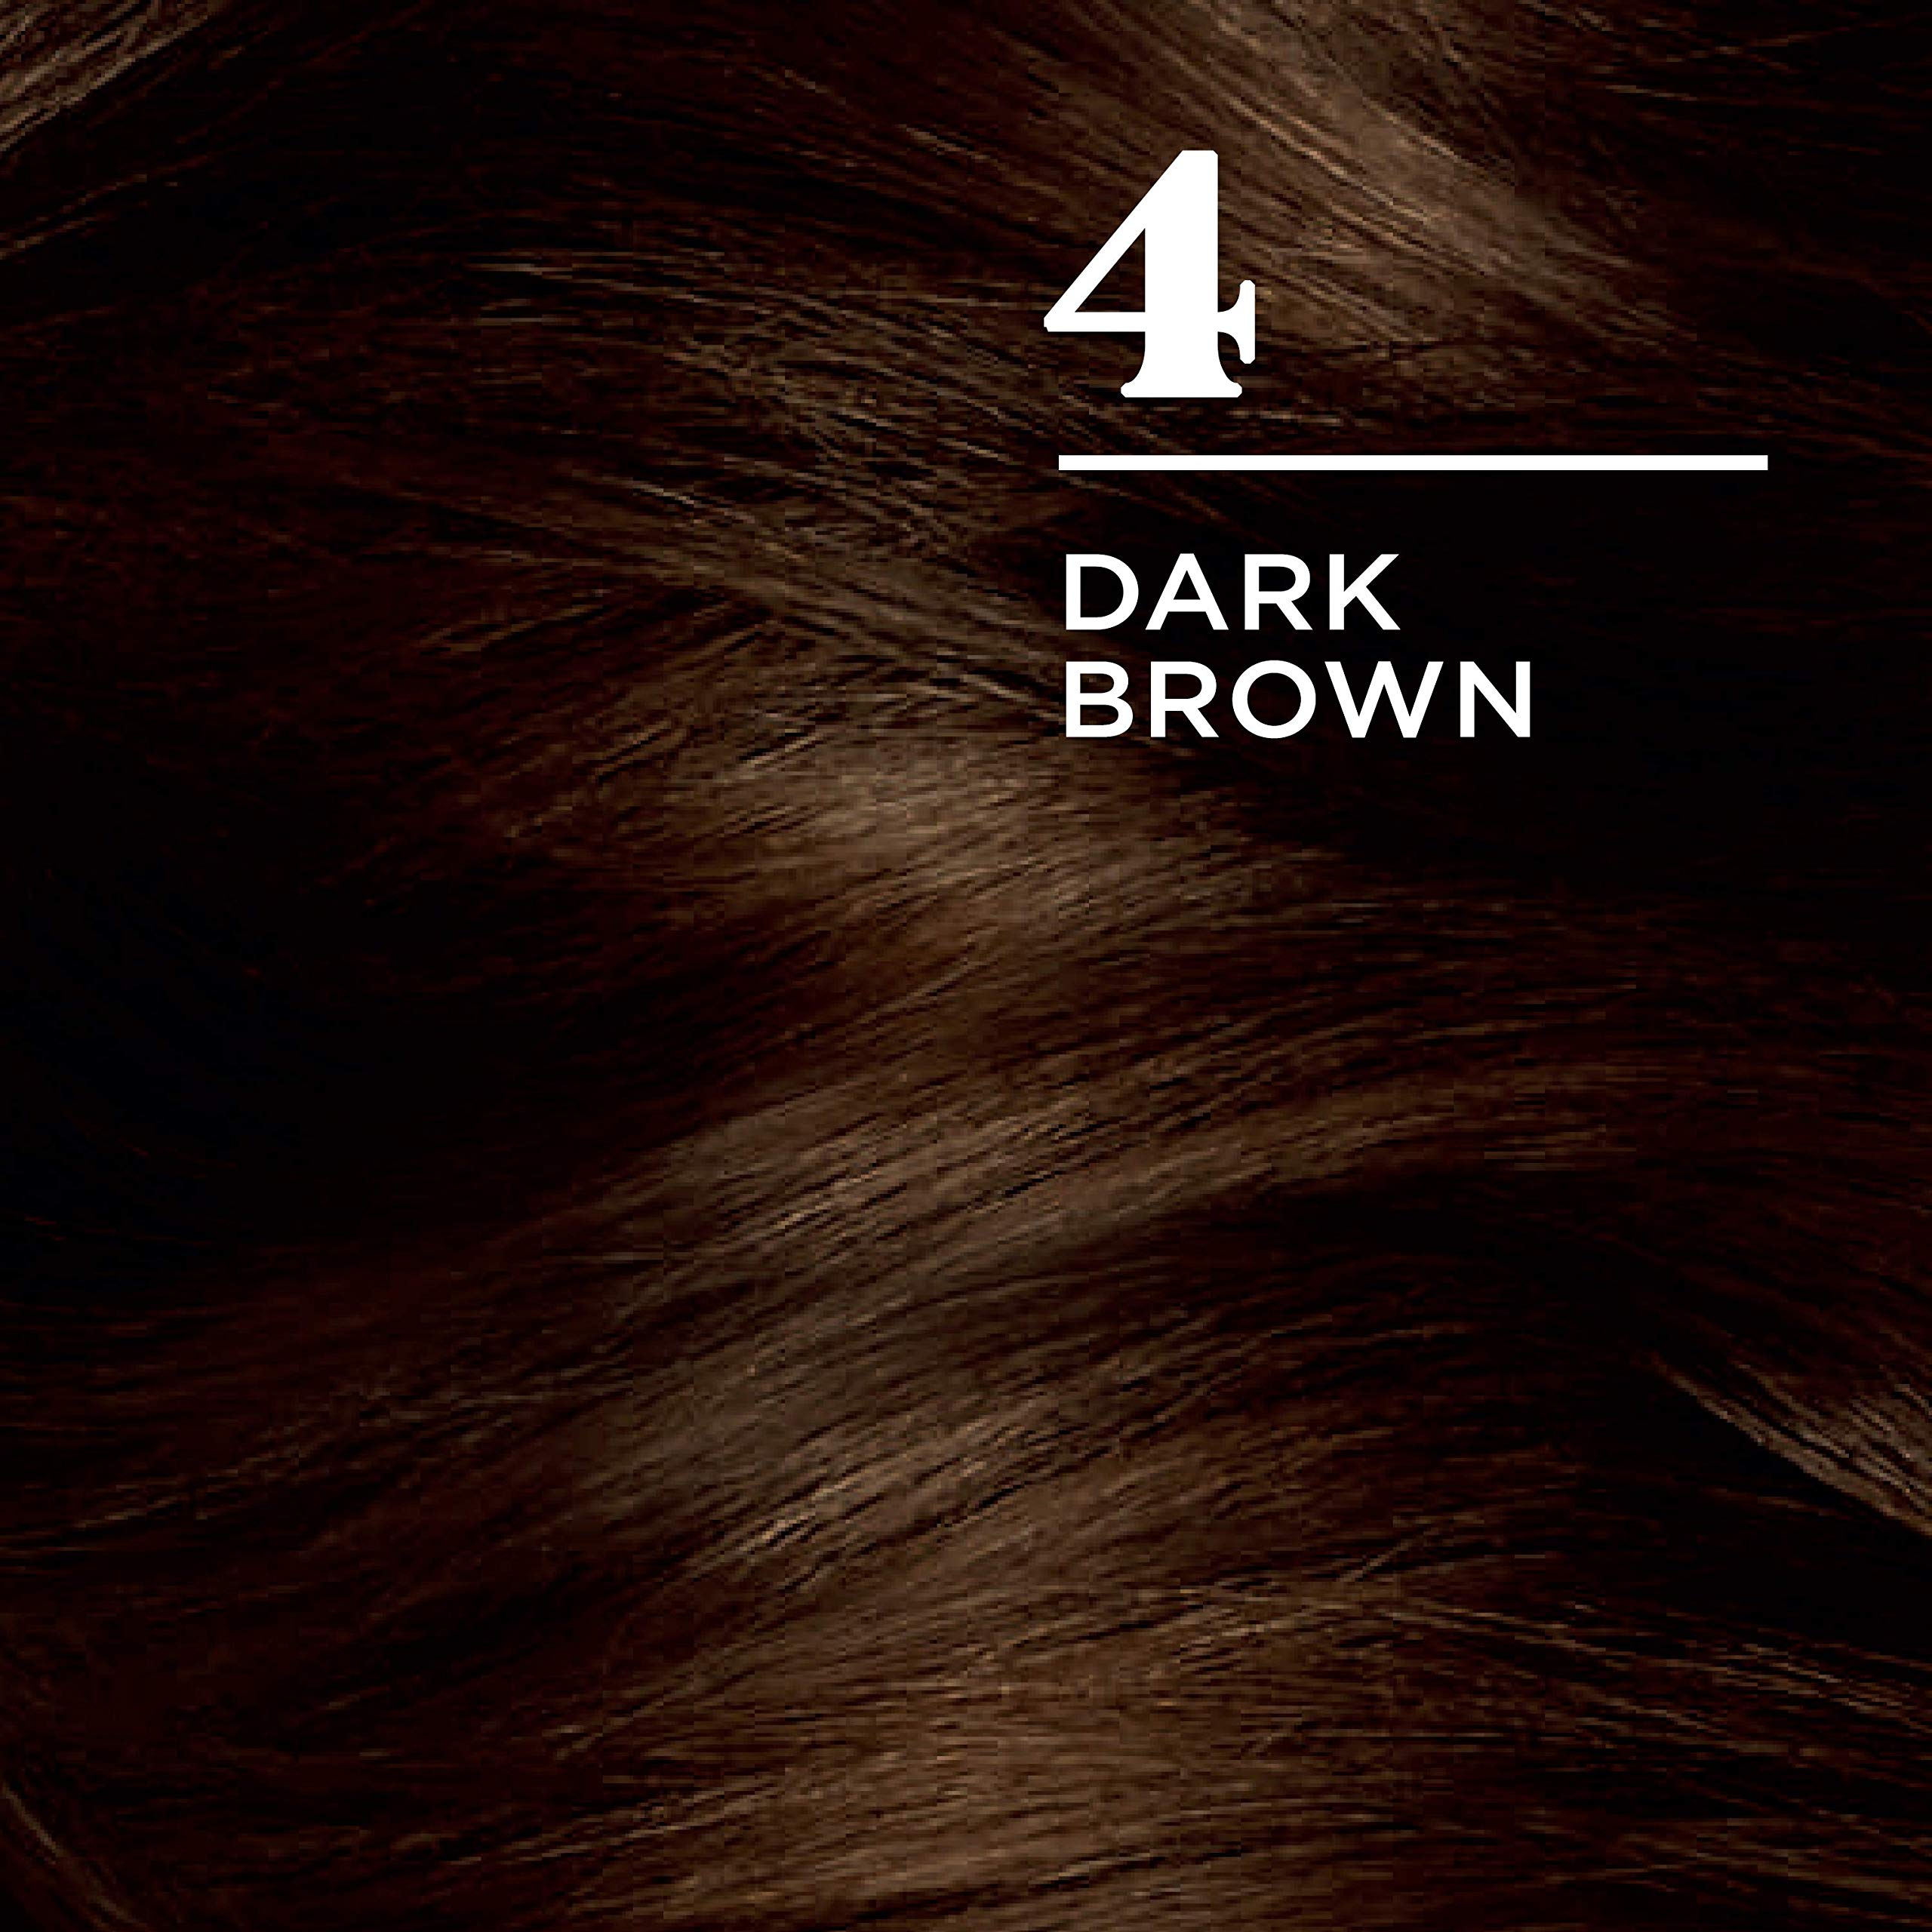 Clairol Nice'n Easy Permanent Hair Dye, 4 Dark Brown Hair Color, 3 Count